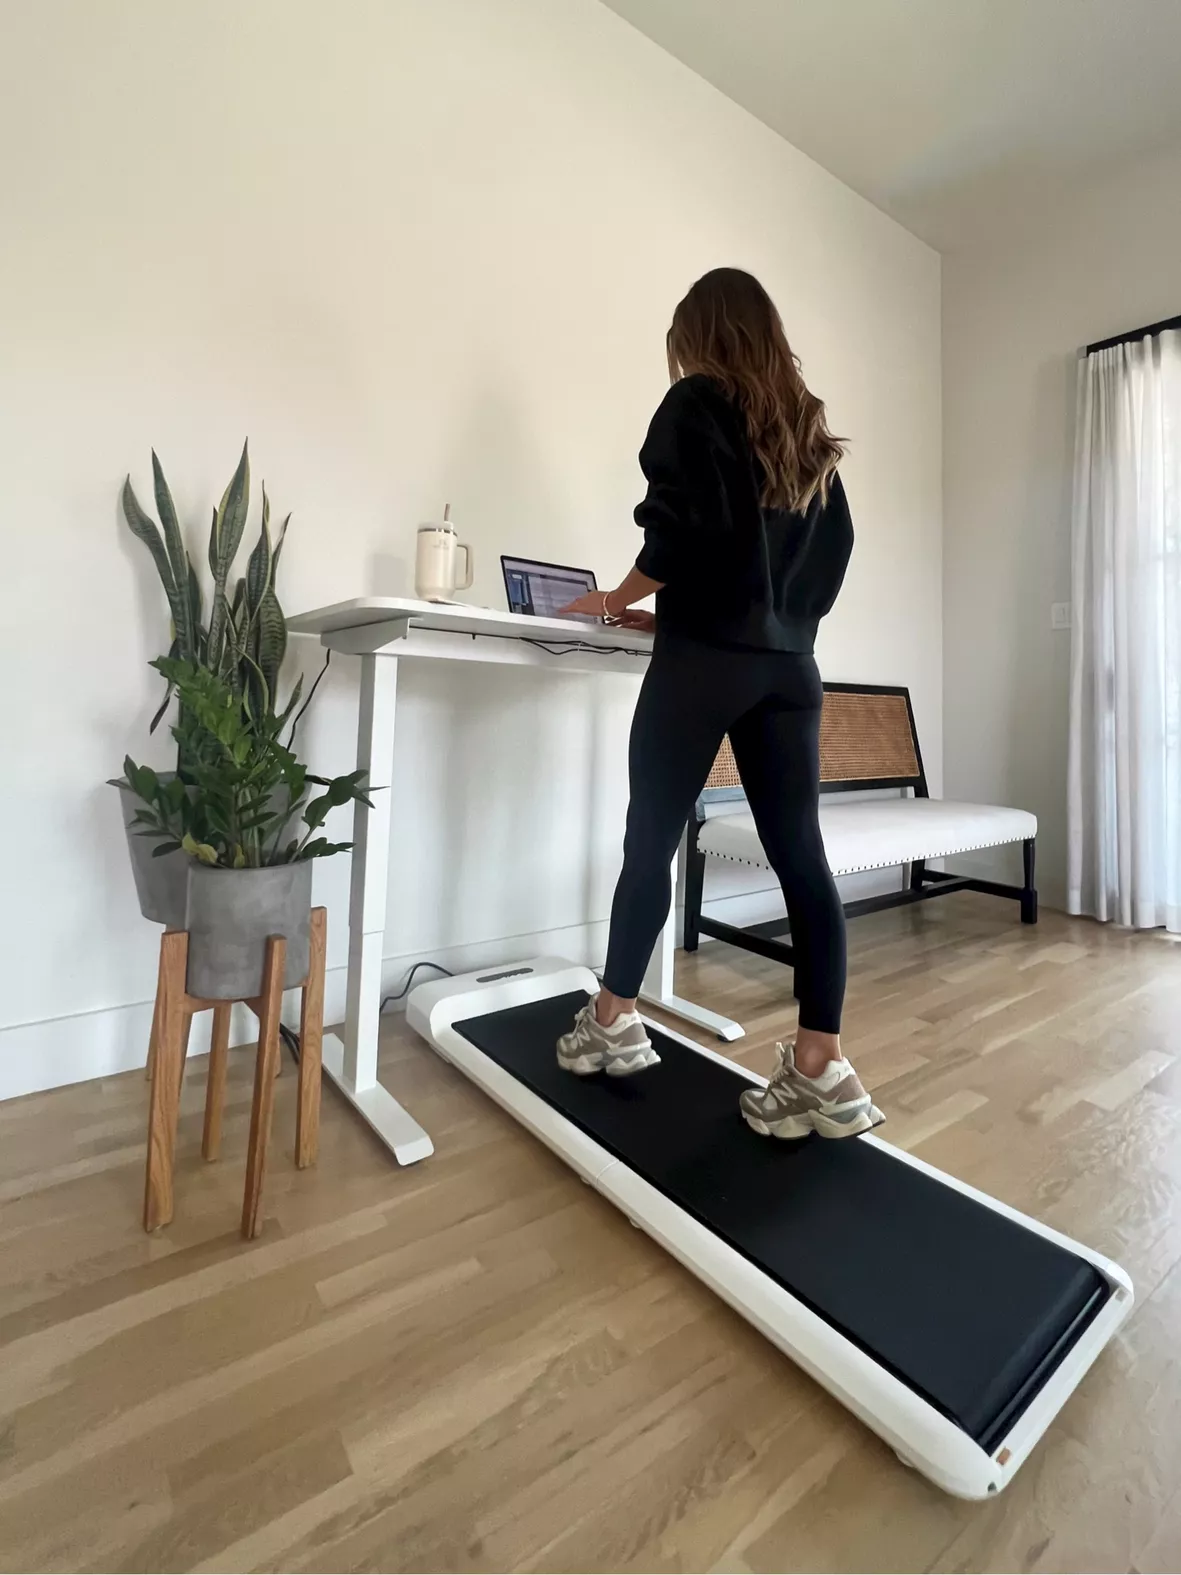 WalkingPad Standing Desk Height Adjustable